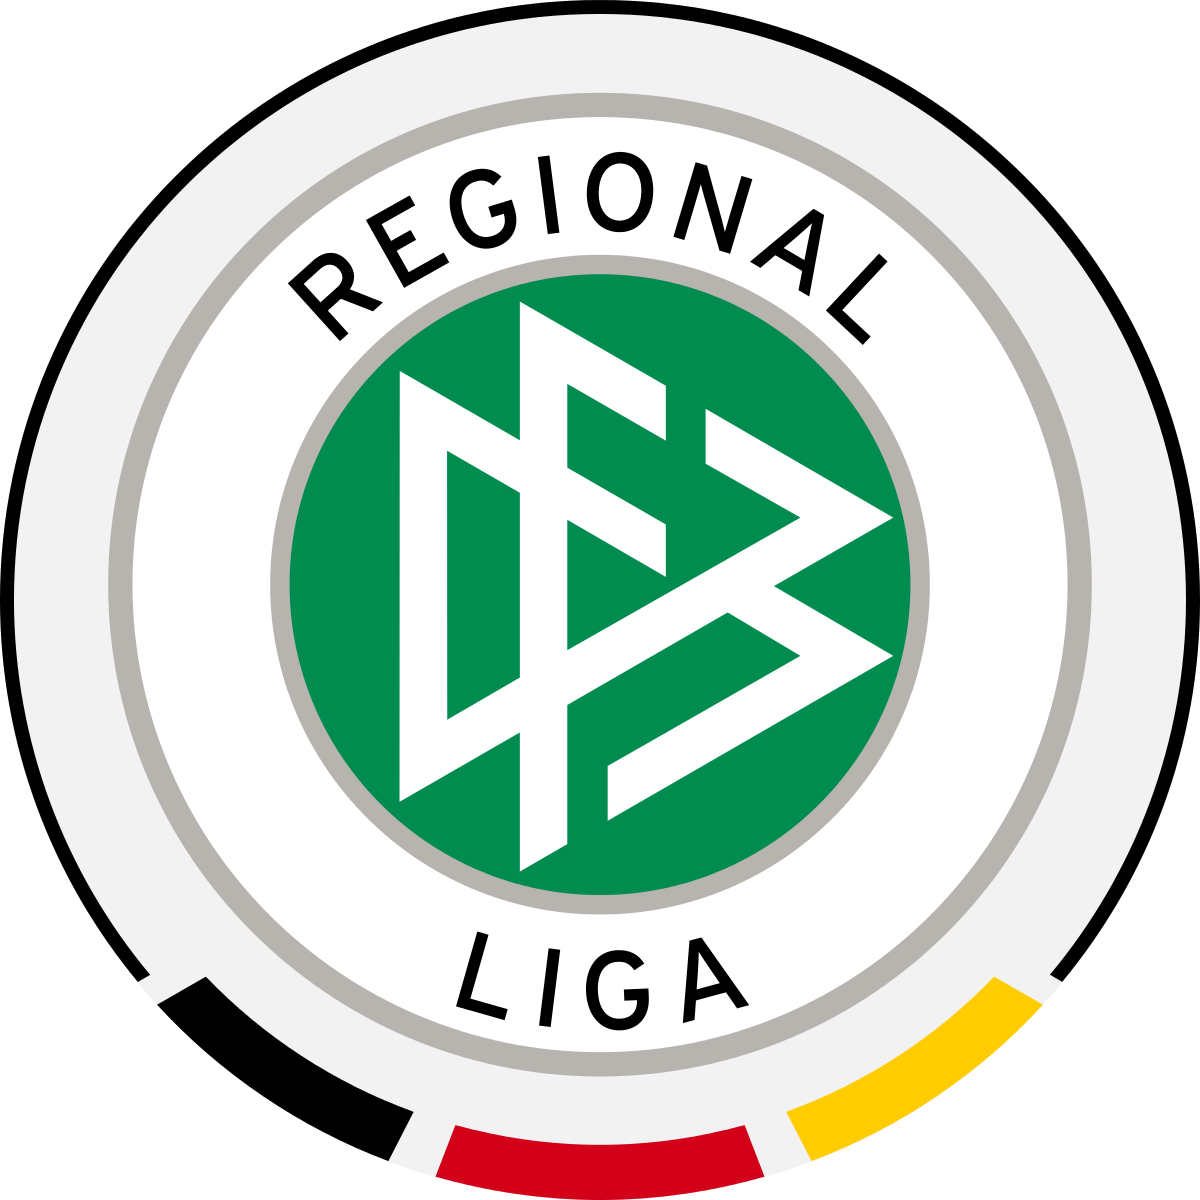 Германия региональная лига бавария таблица футбол